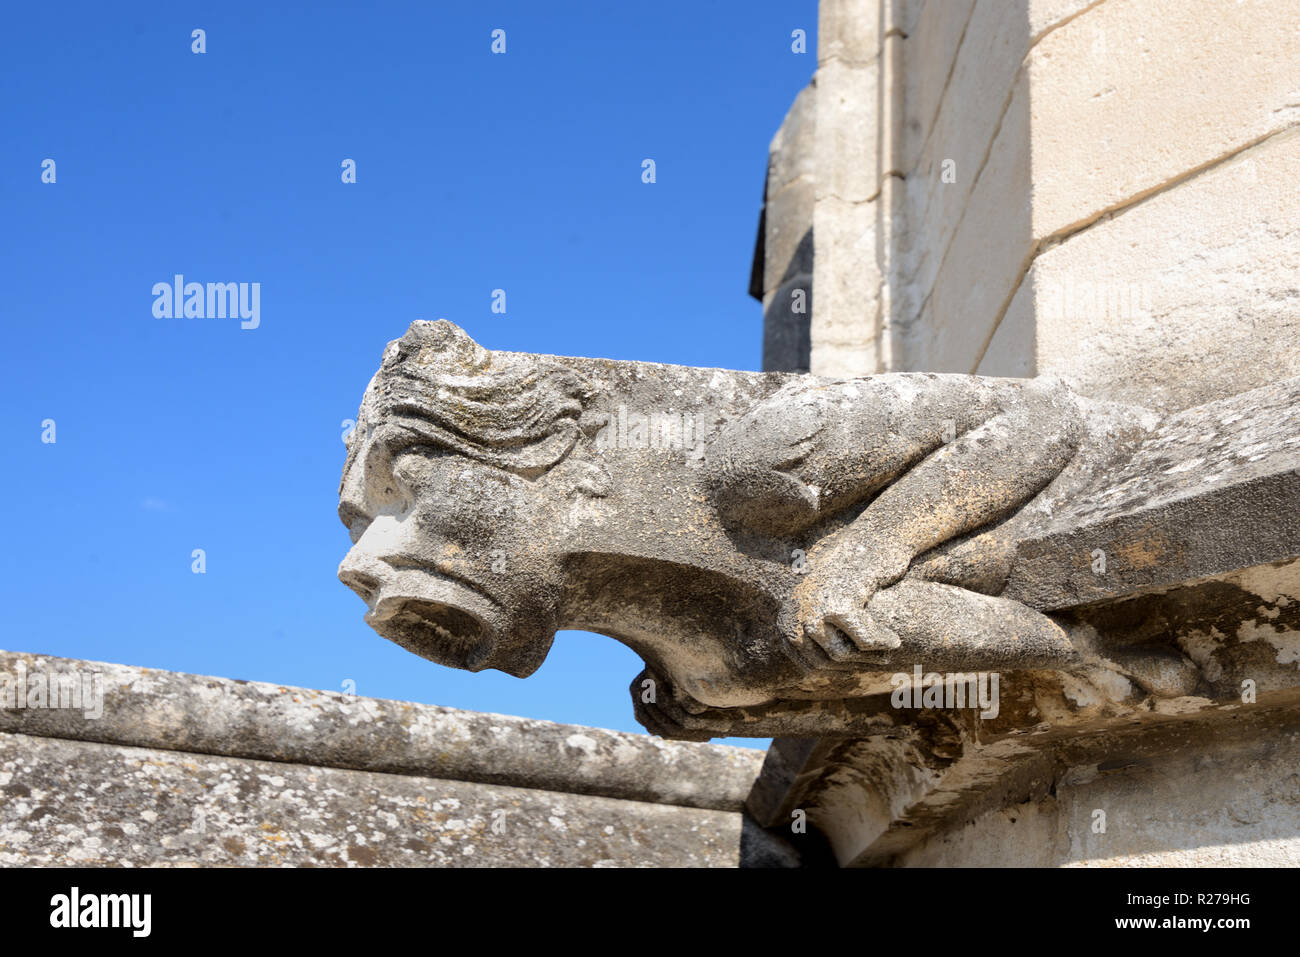 Monstre mythique, créature ou gargouille Grotesque Palais des Papes, le Palais des Papes ou le Palais des Papes Avignon Provence France Banque D'Images